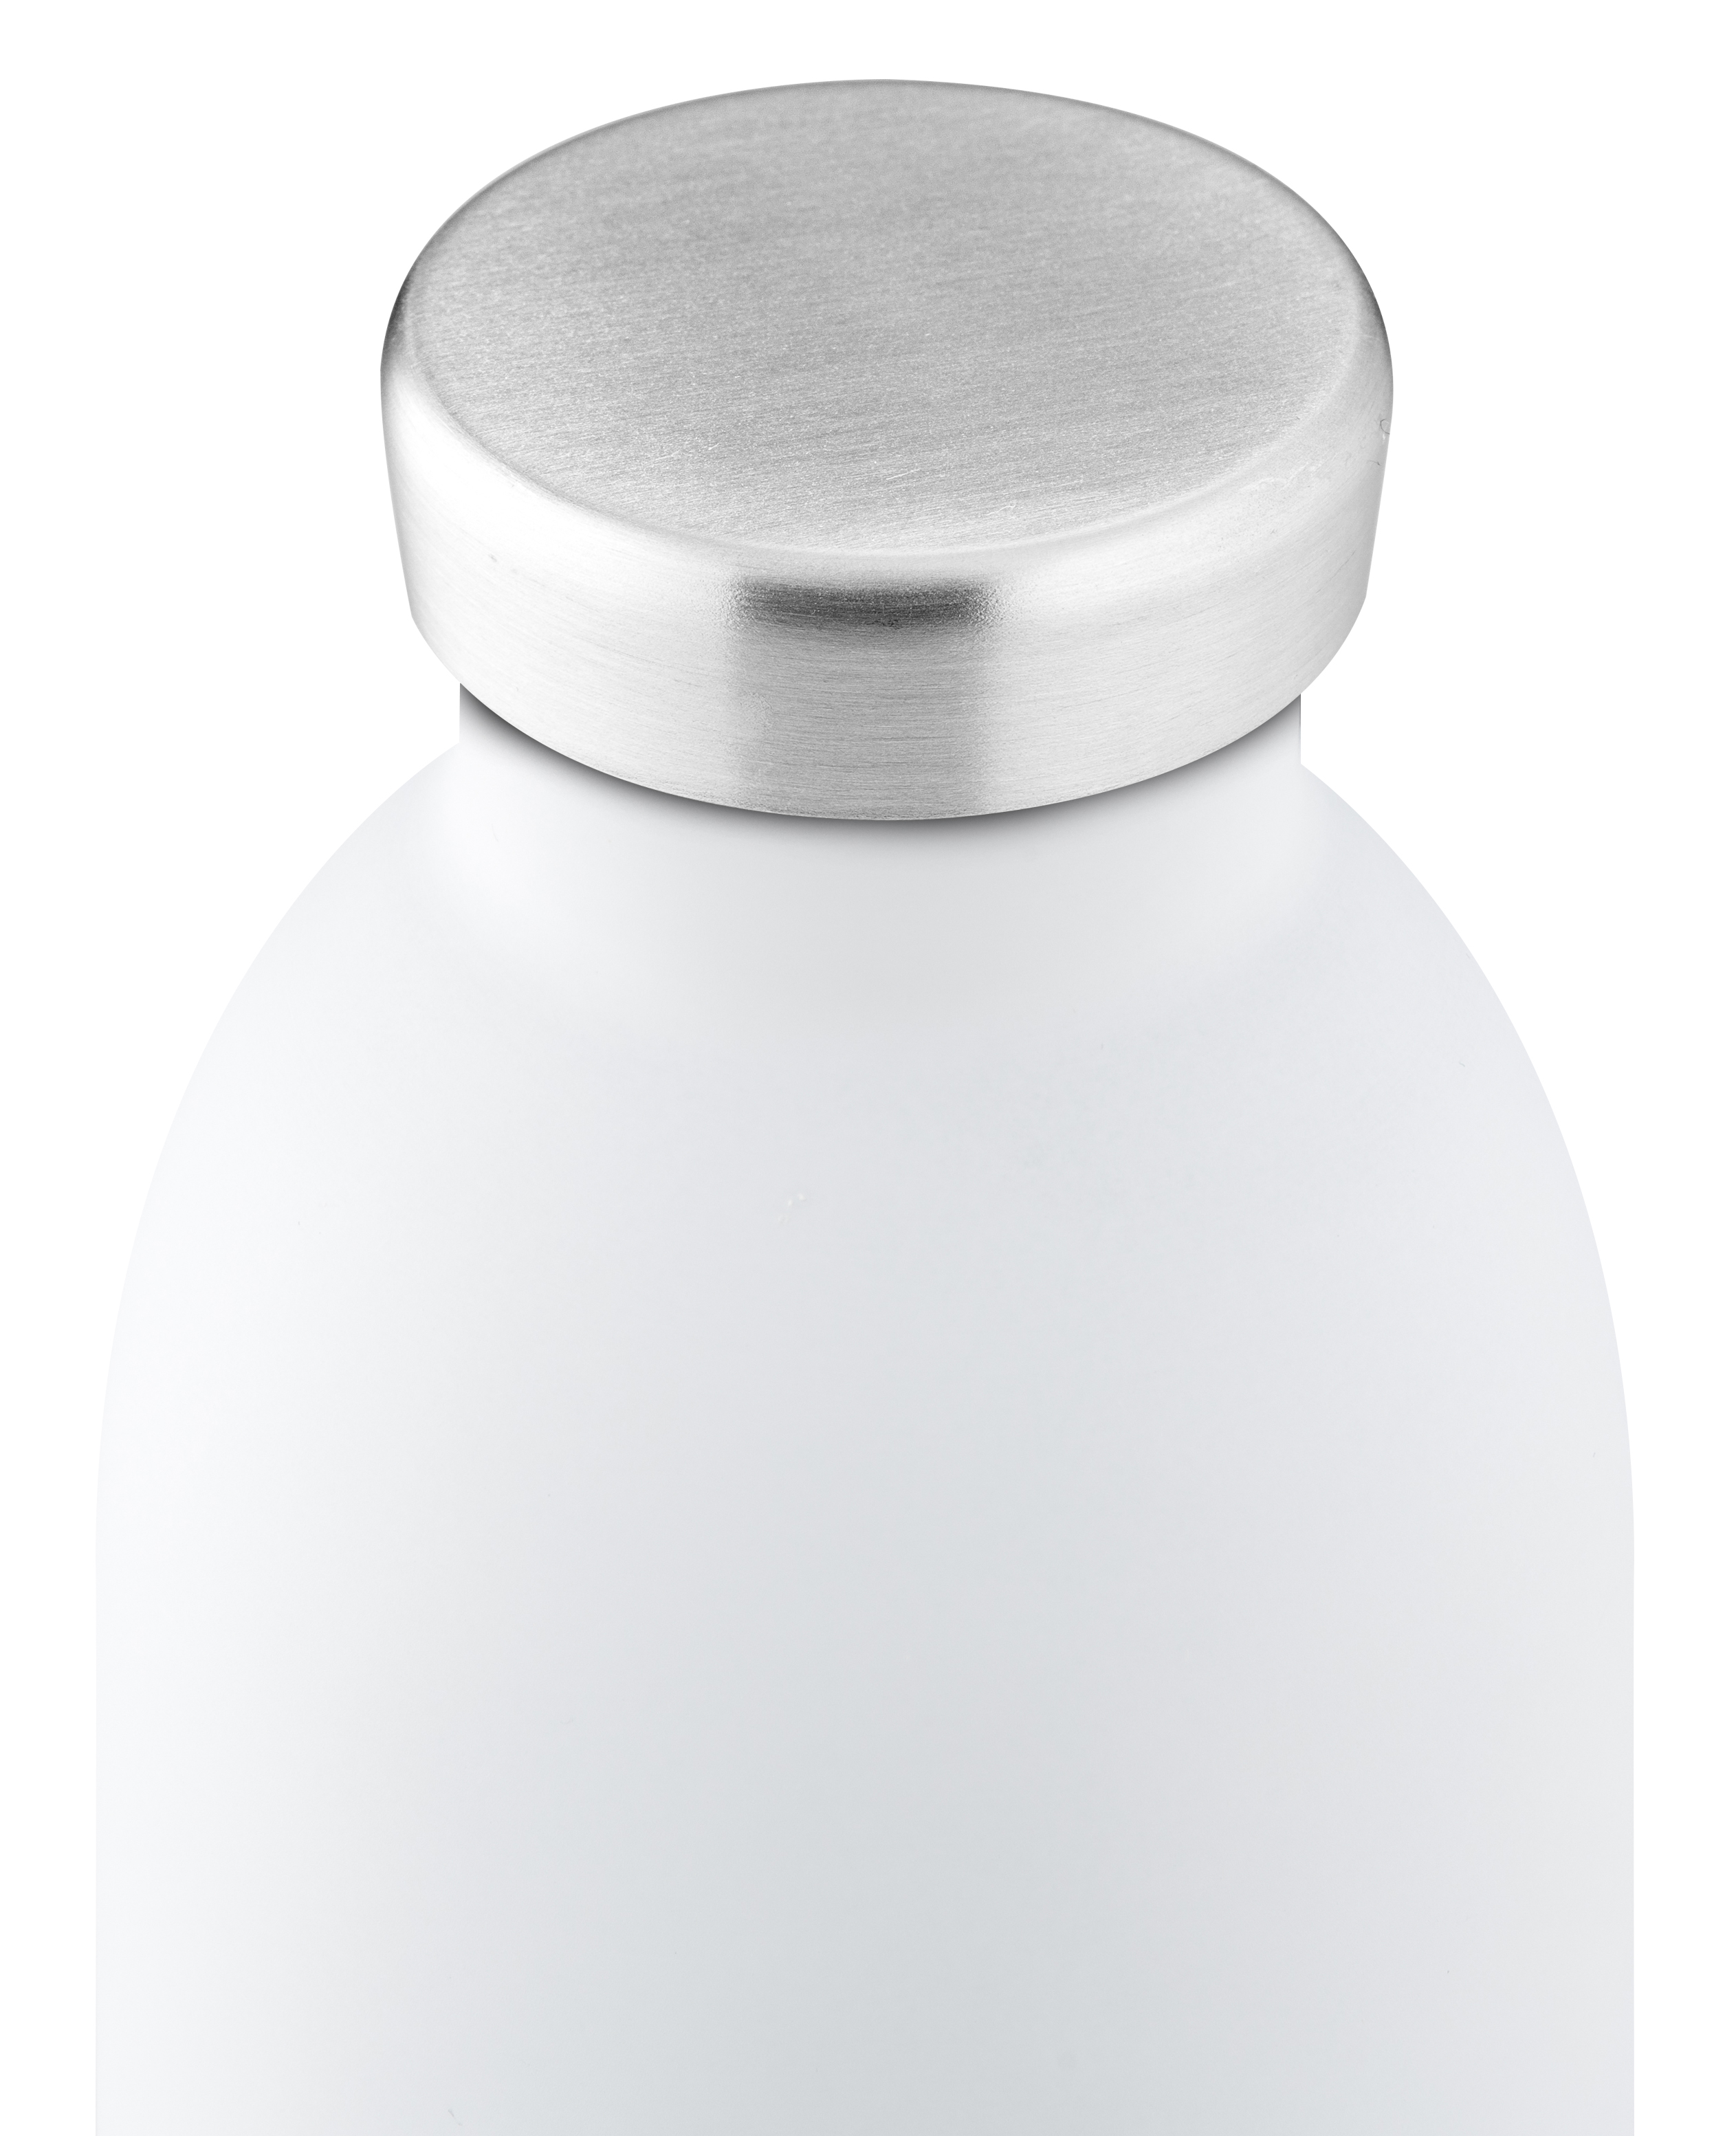 24Bottles Clima Bottle 500ml - Ice White 